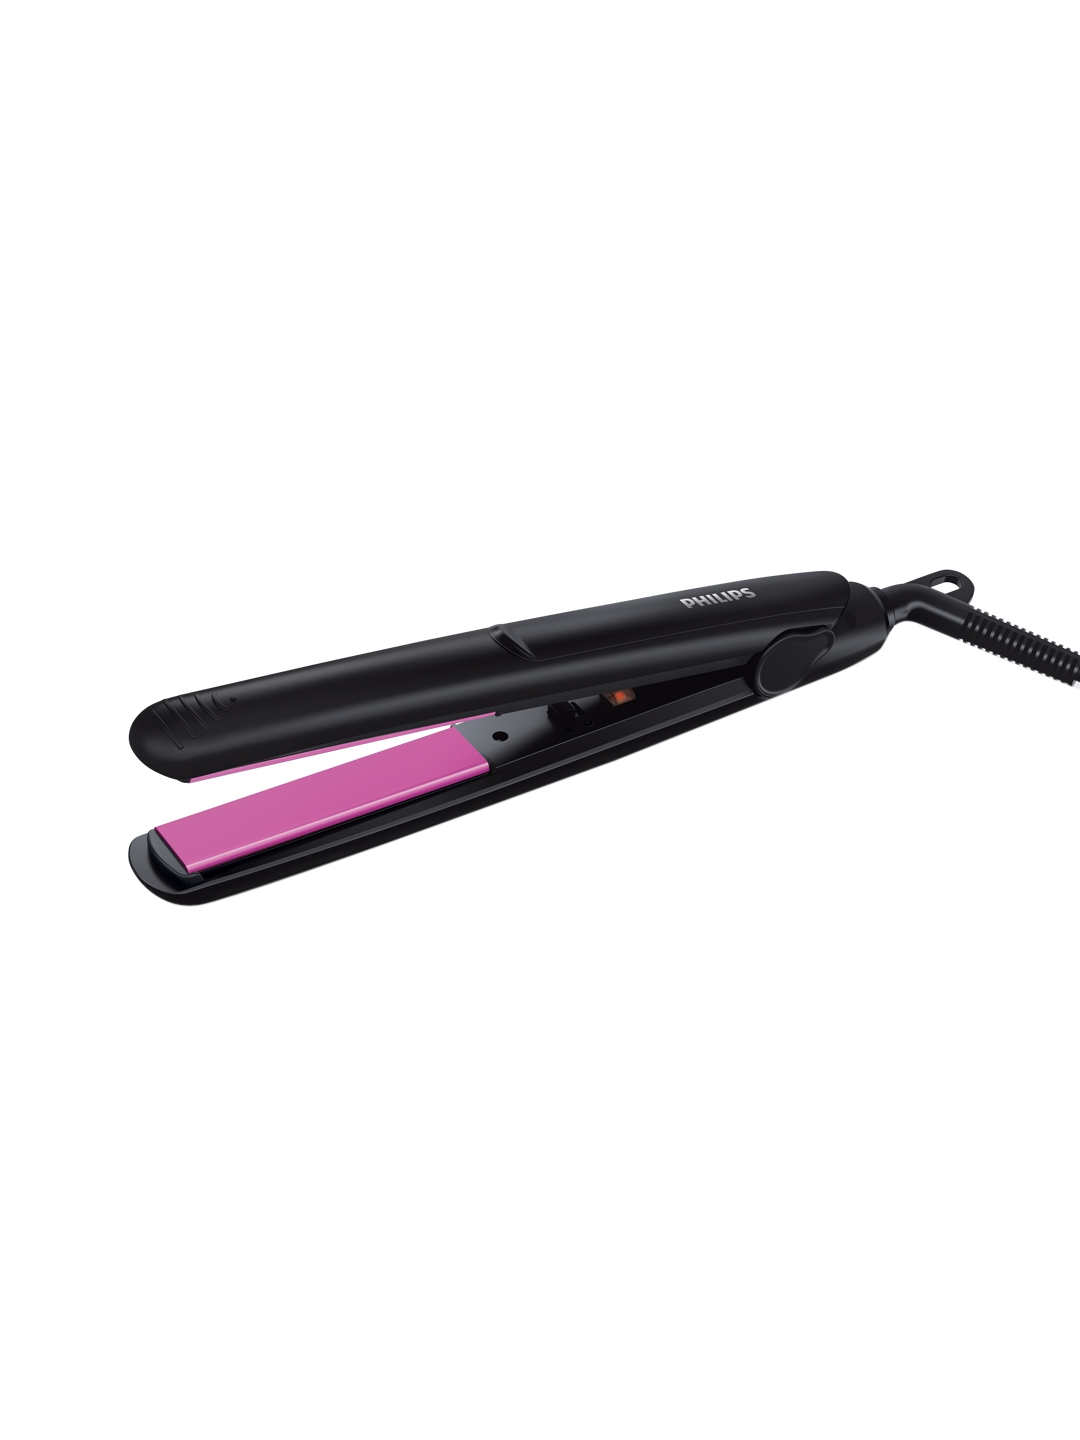 Philips HP8302/06 Selfie SilkPro Care Hair Straightener   Black